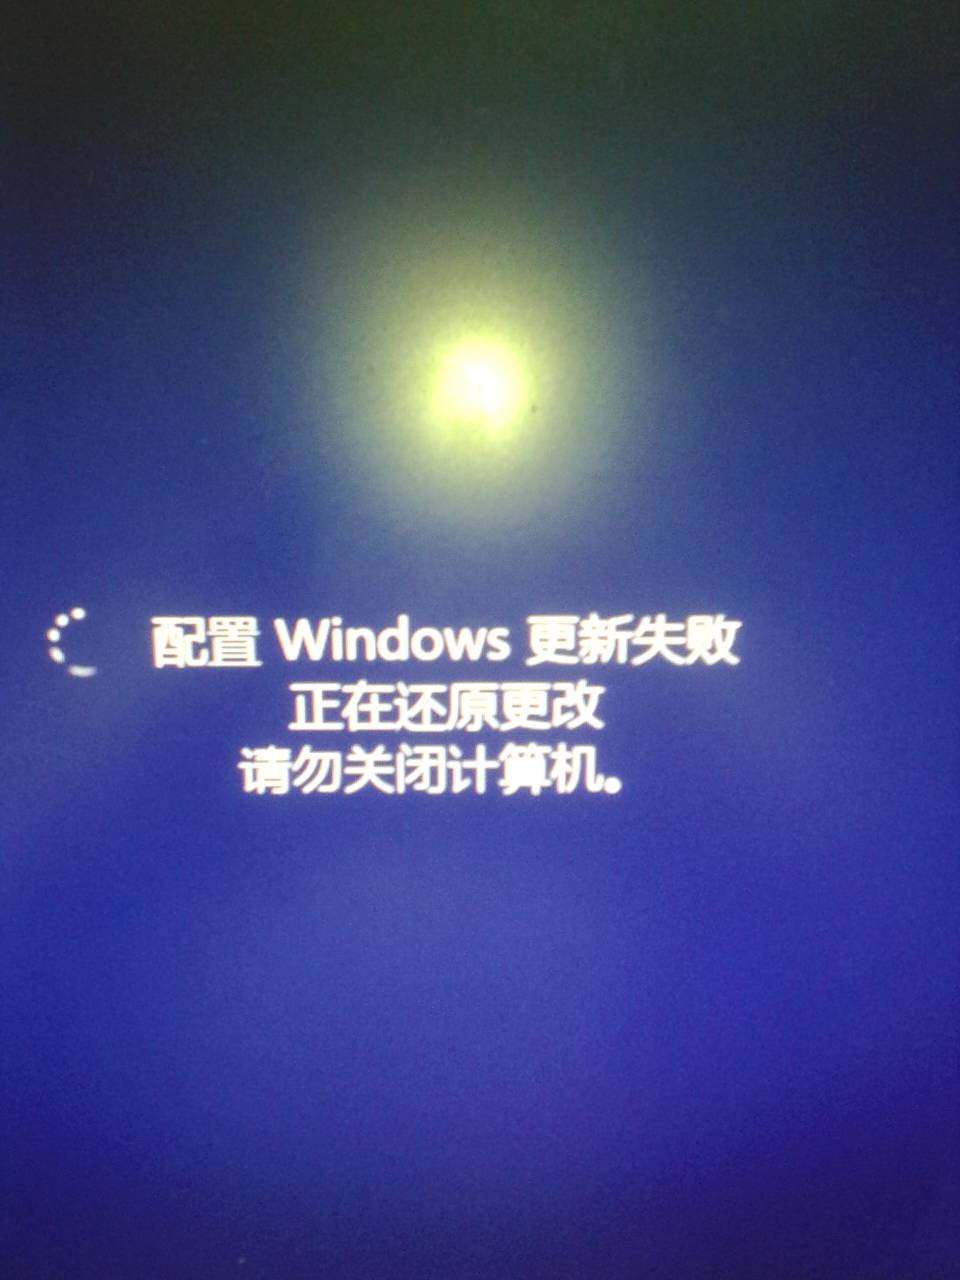 笔记本电脑关机的时候一直显示  准备配置Windows，请勿关闭计算机  怎么修好啊？急！！！